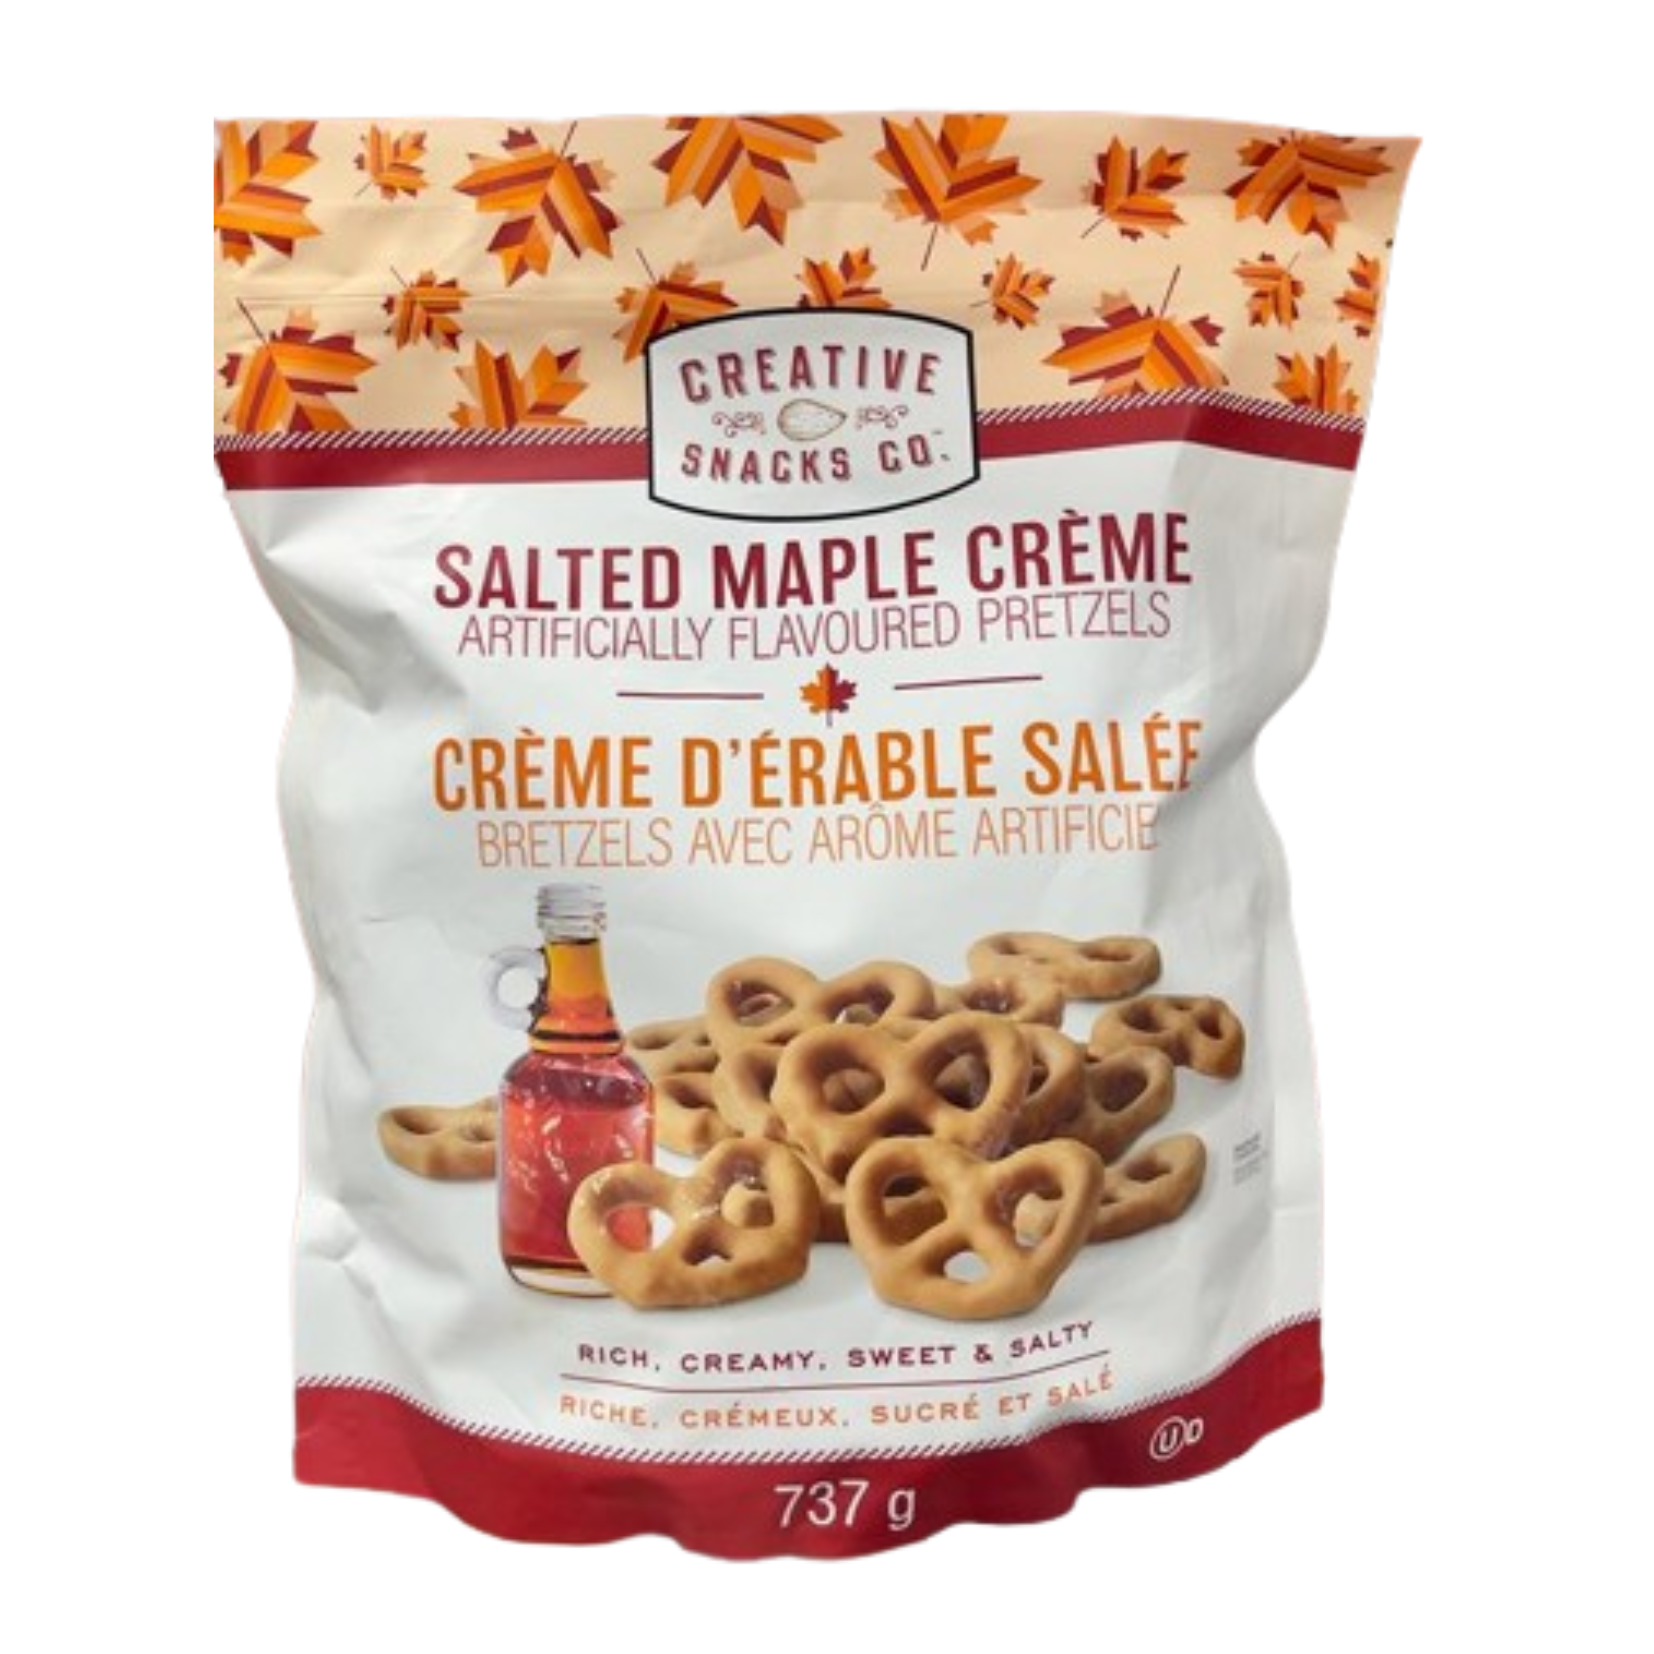 Creative Snacks Salted Maple Creme Flavoured Pretzels 737g